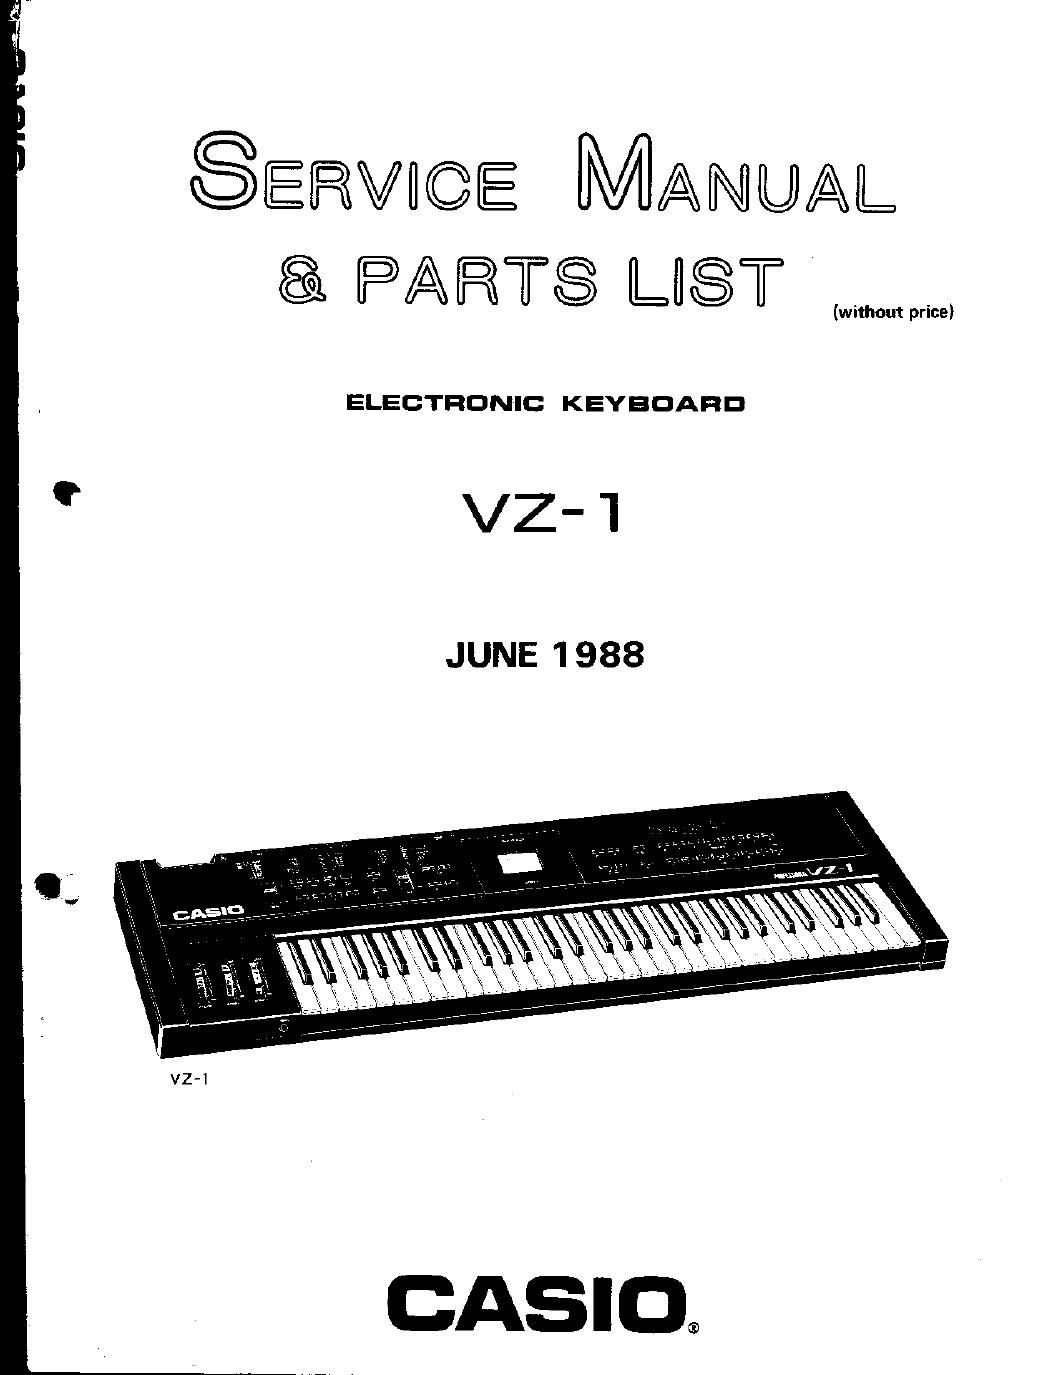 casio vz 1 service manual